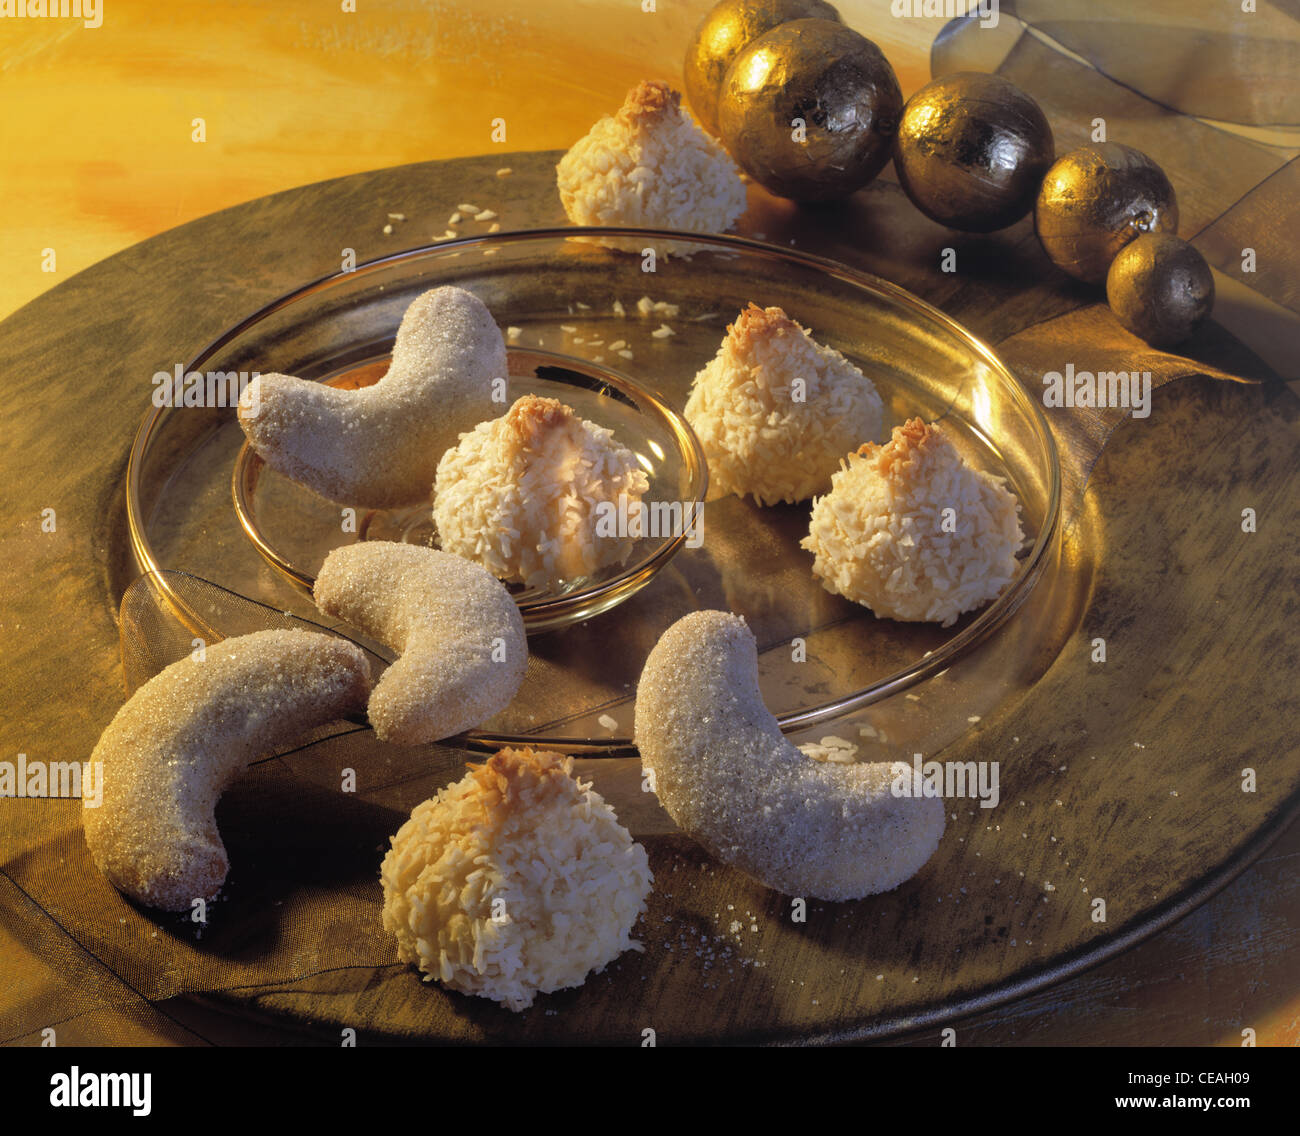 Emporte-pièce Eid Mubarak Croissant de Lune V2 - La Boîte à Cookies